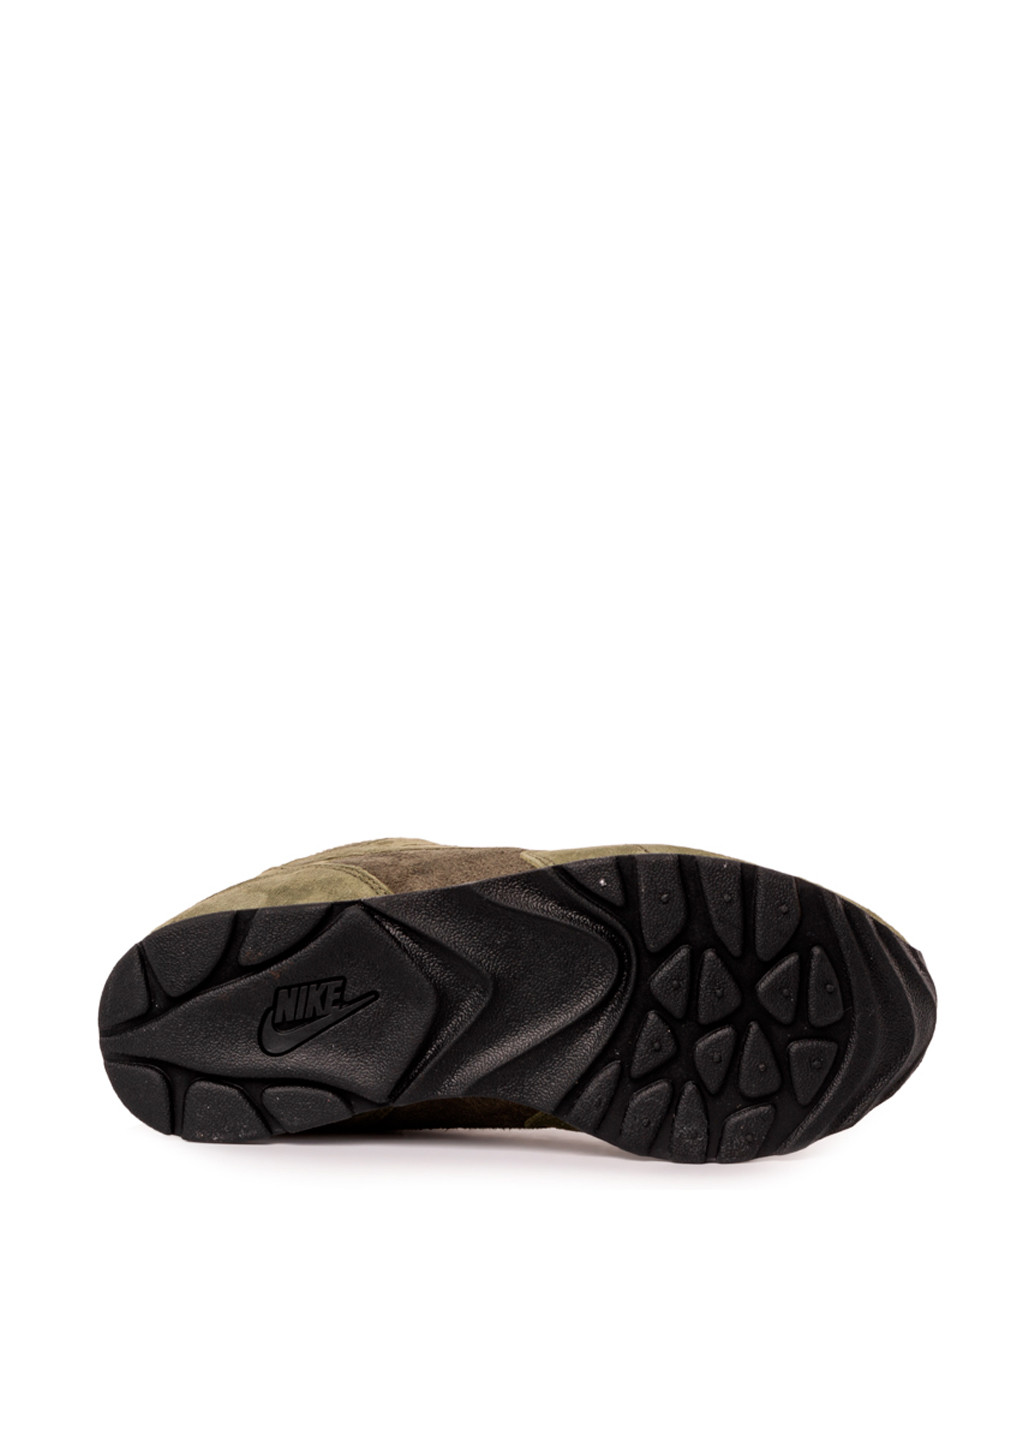 Оливковые (хаки) демисезонные кроссовки Nike W OUTBURST SE